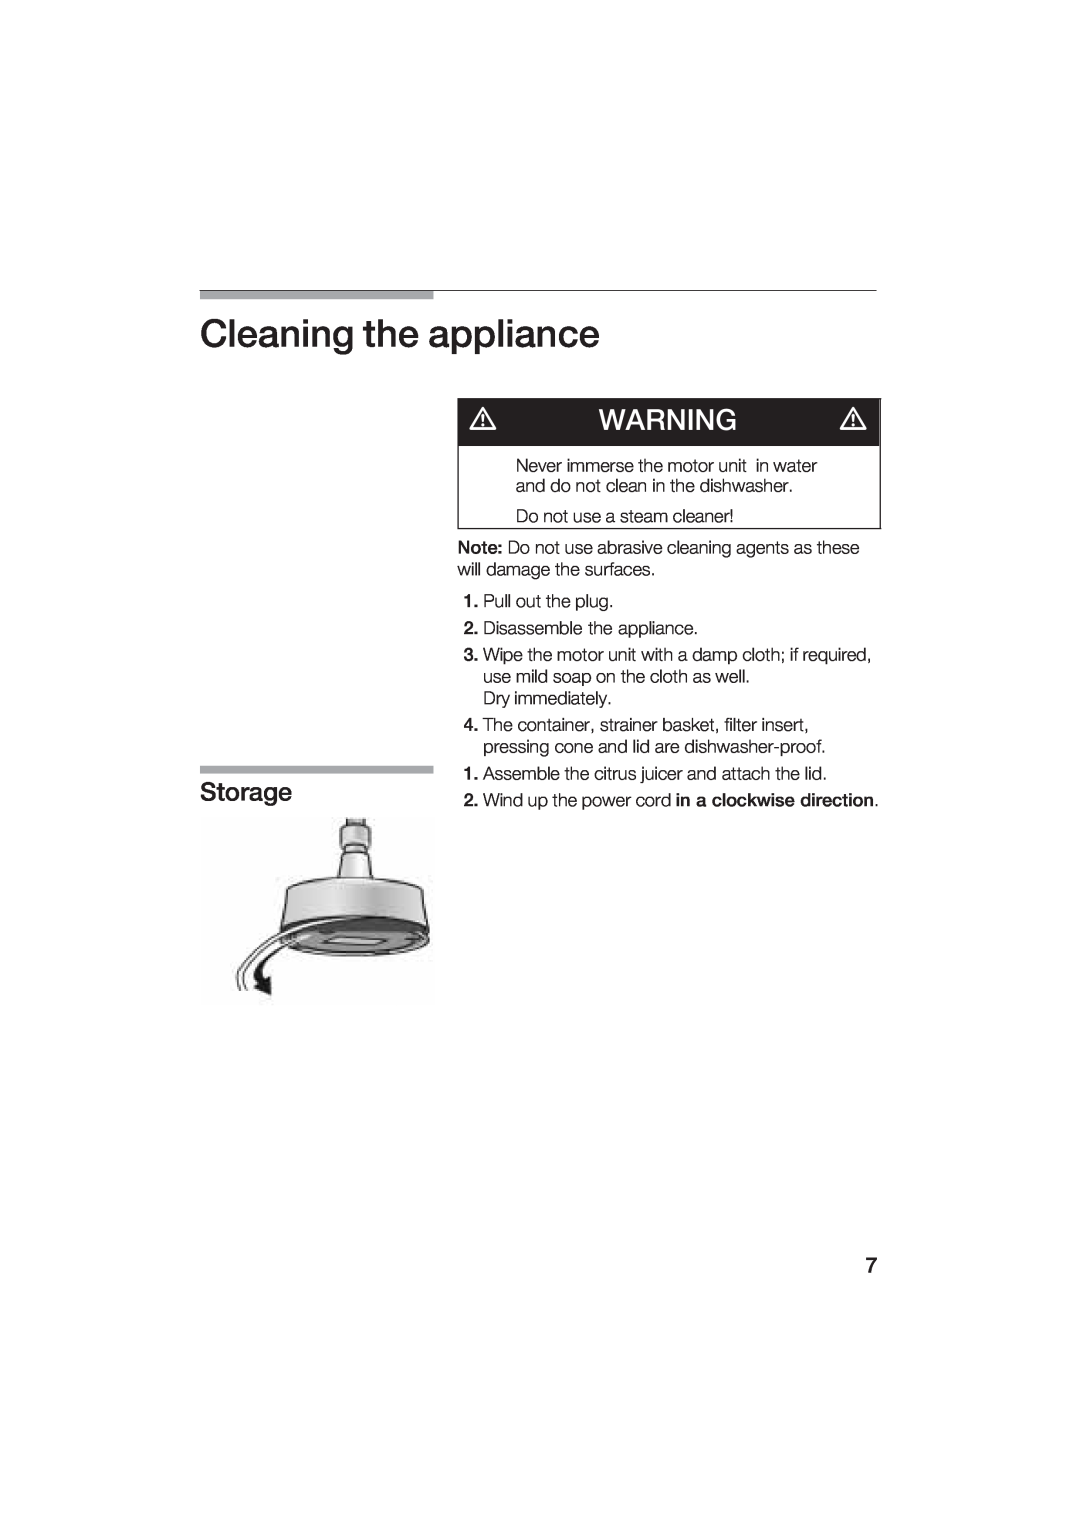 Bosch Appliances MCP 3500 manual Cleaning he appliance, Soage 